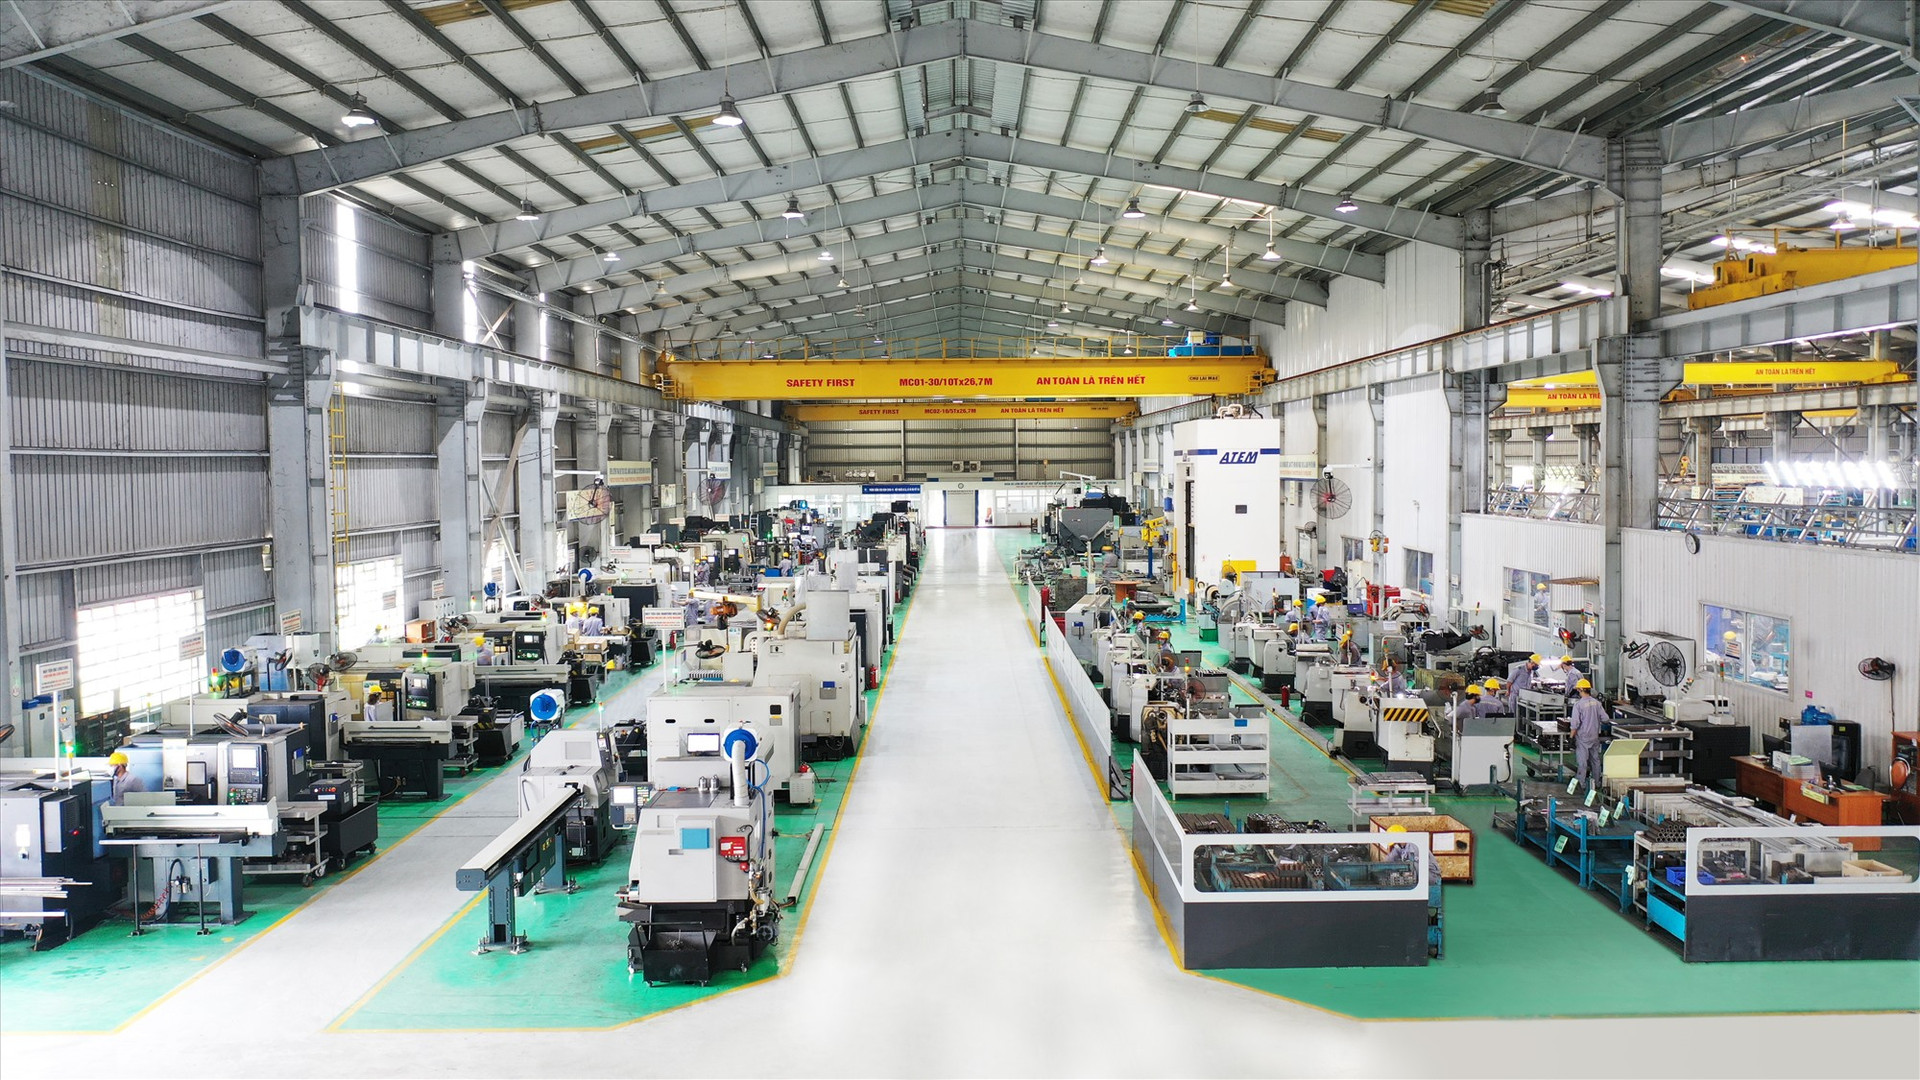 Các nhà máy của THACO Industries đều được trang bị hệ thống dây chuyền, công nghệ hiện đại, đồng bộ, được chuyển giao từ Đức, Thụy Sĩ, Nhật Bản, Hàn Quốc...